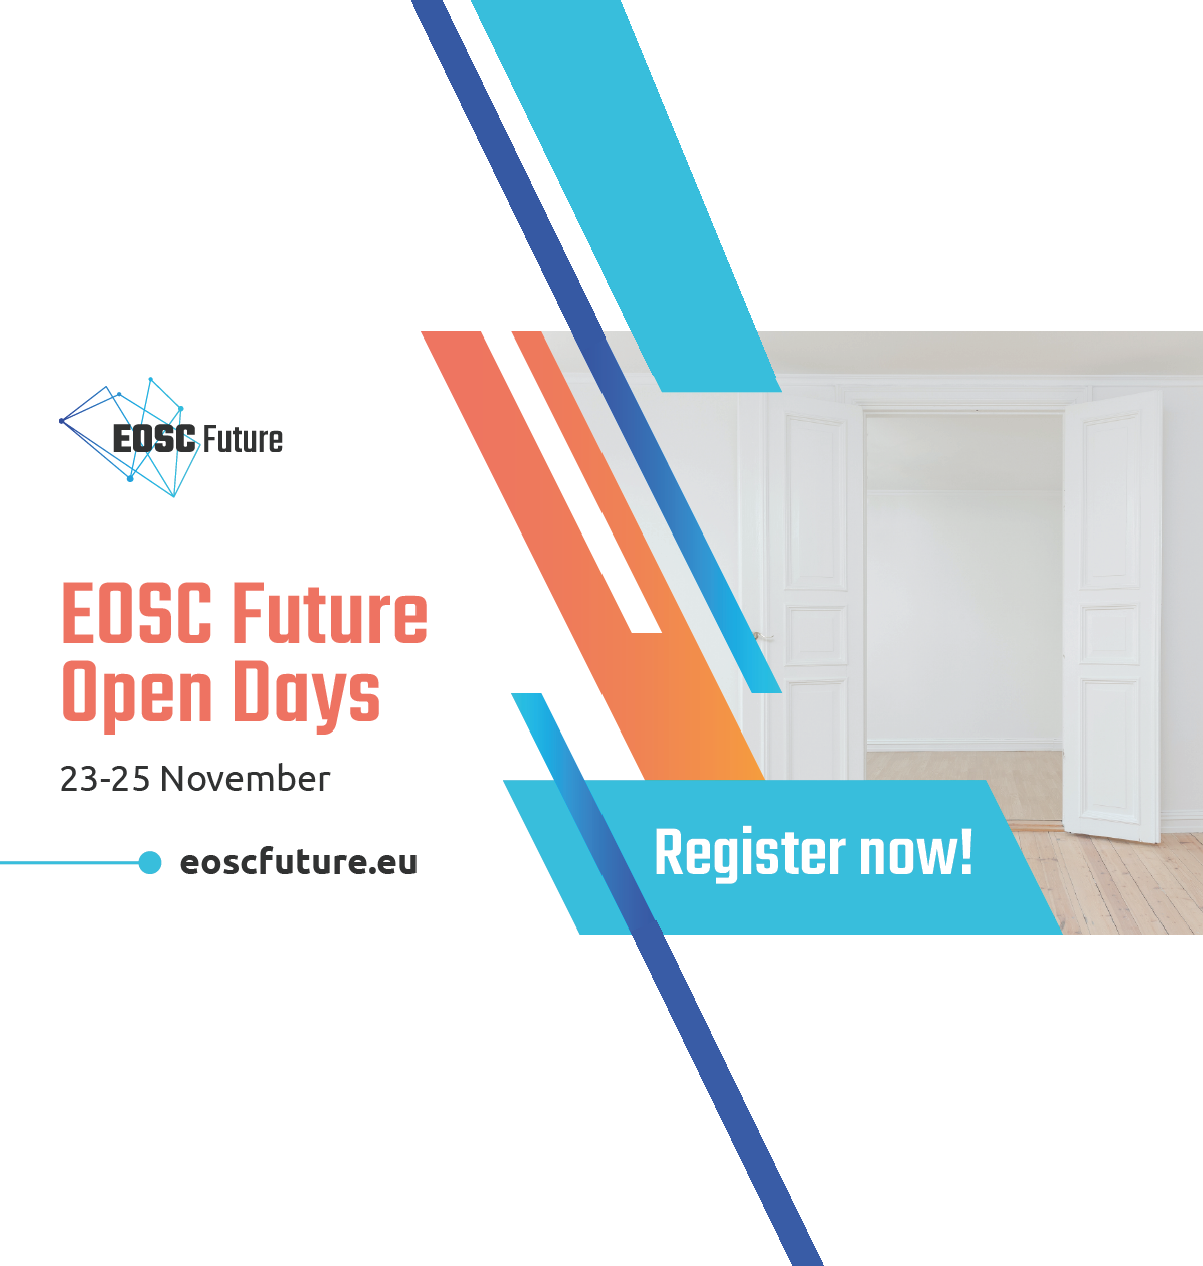 EOSC Future Open Days